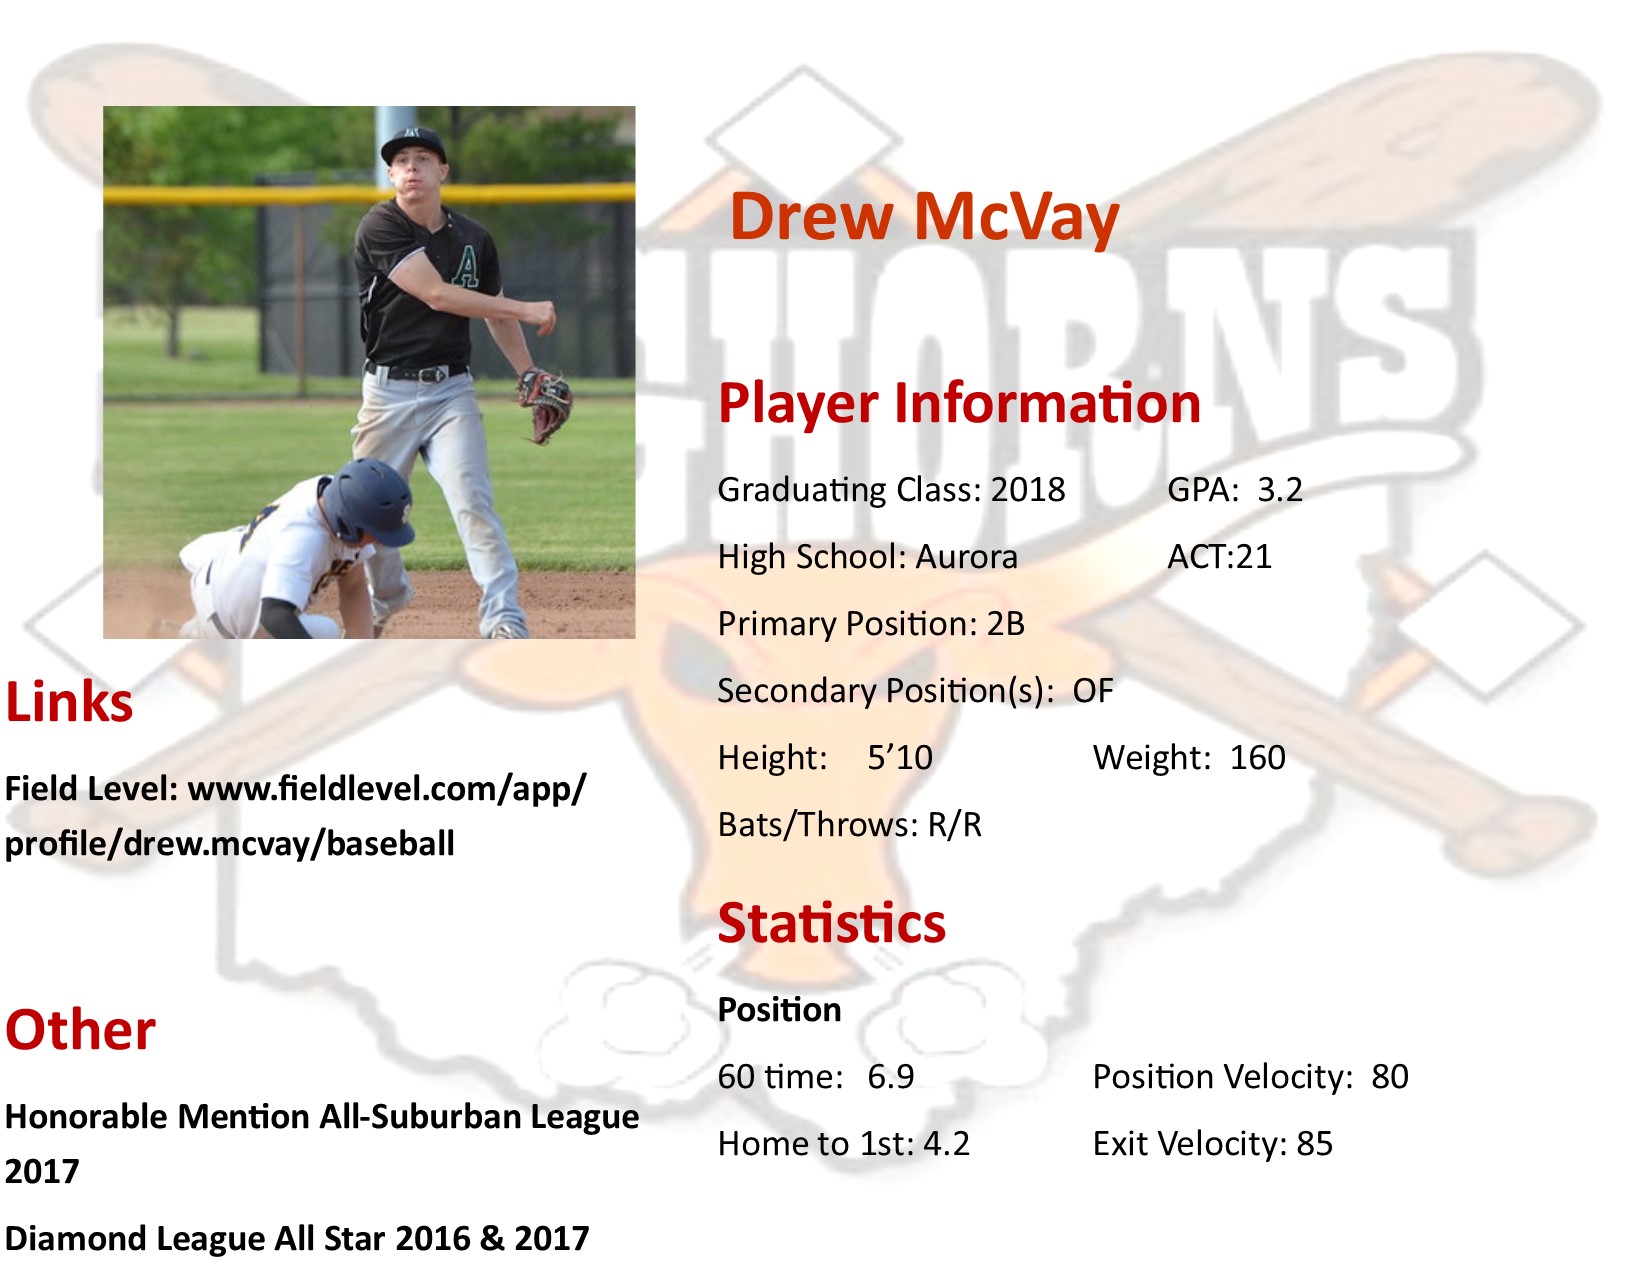 Drew McVay